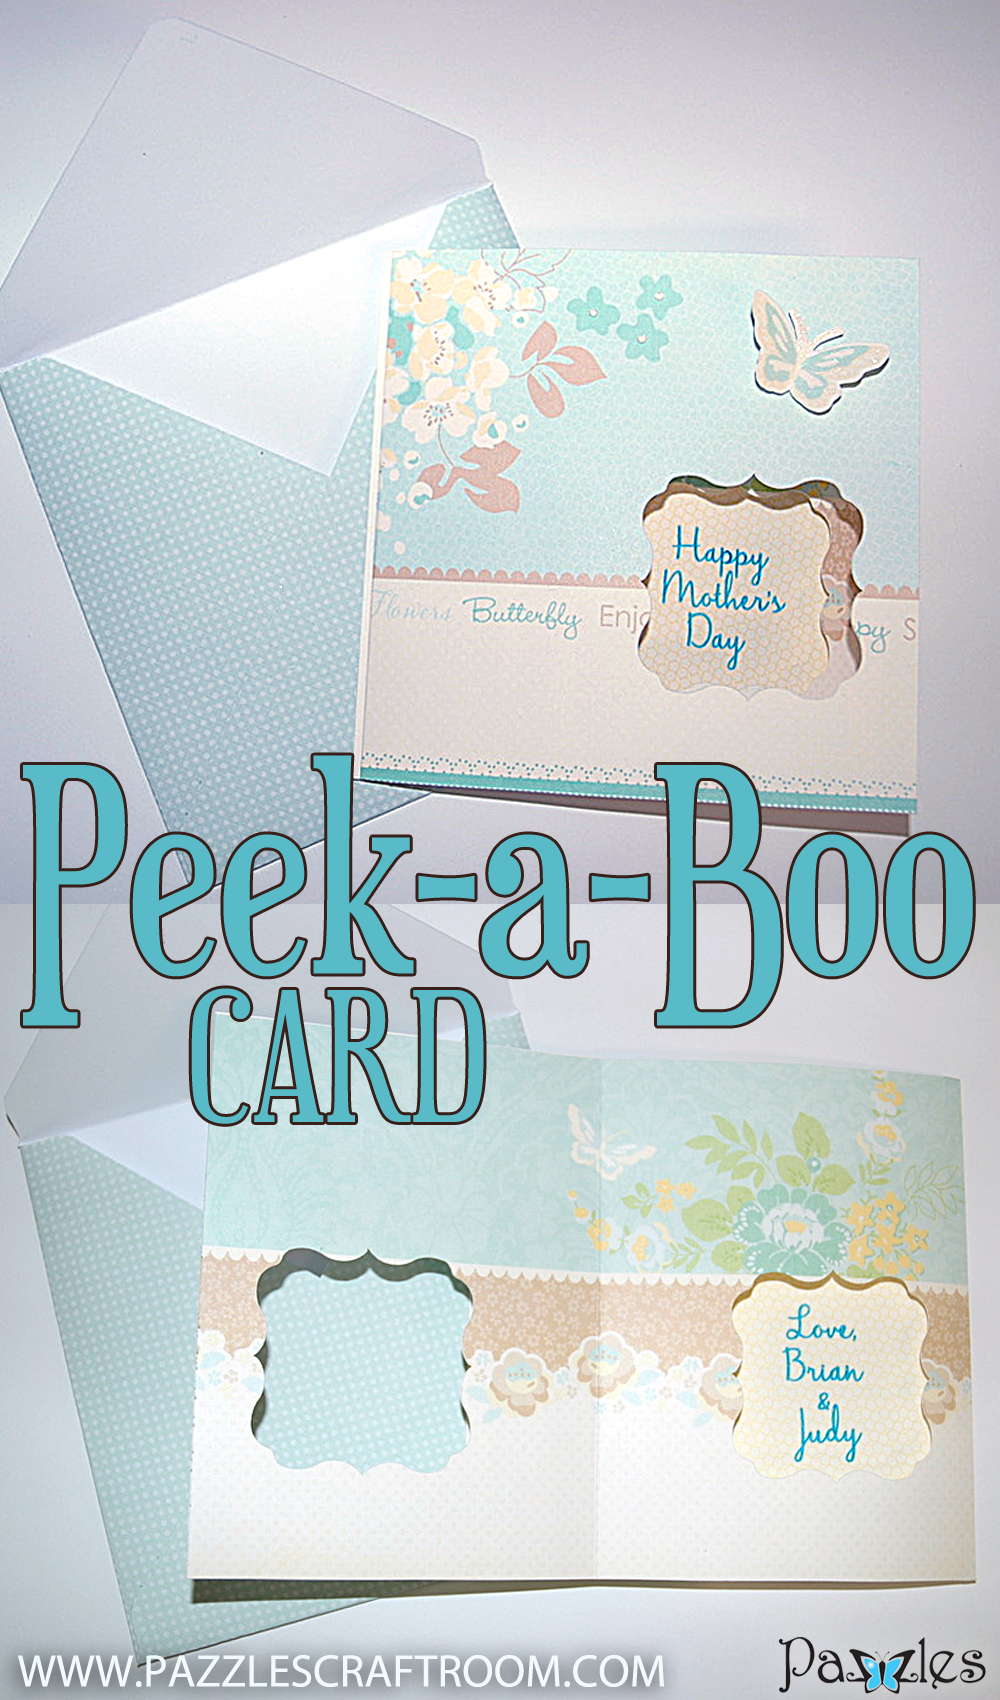 Pazzles DIY Peek A Boo Card by Judy Hanson